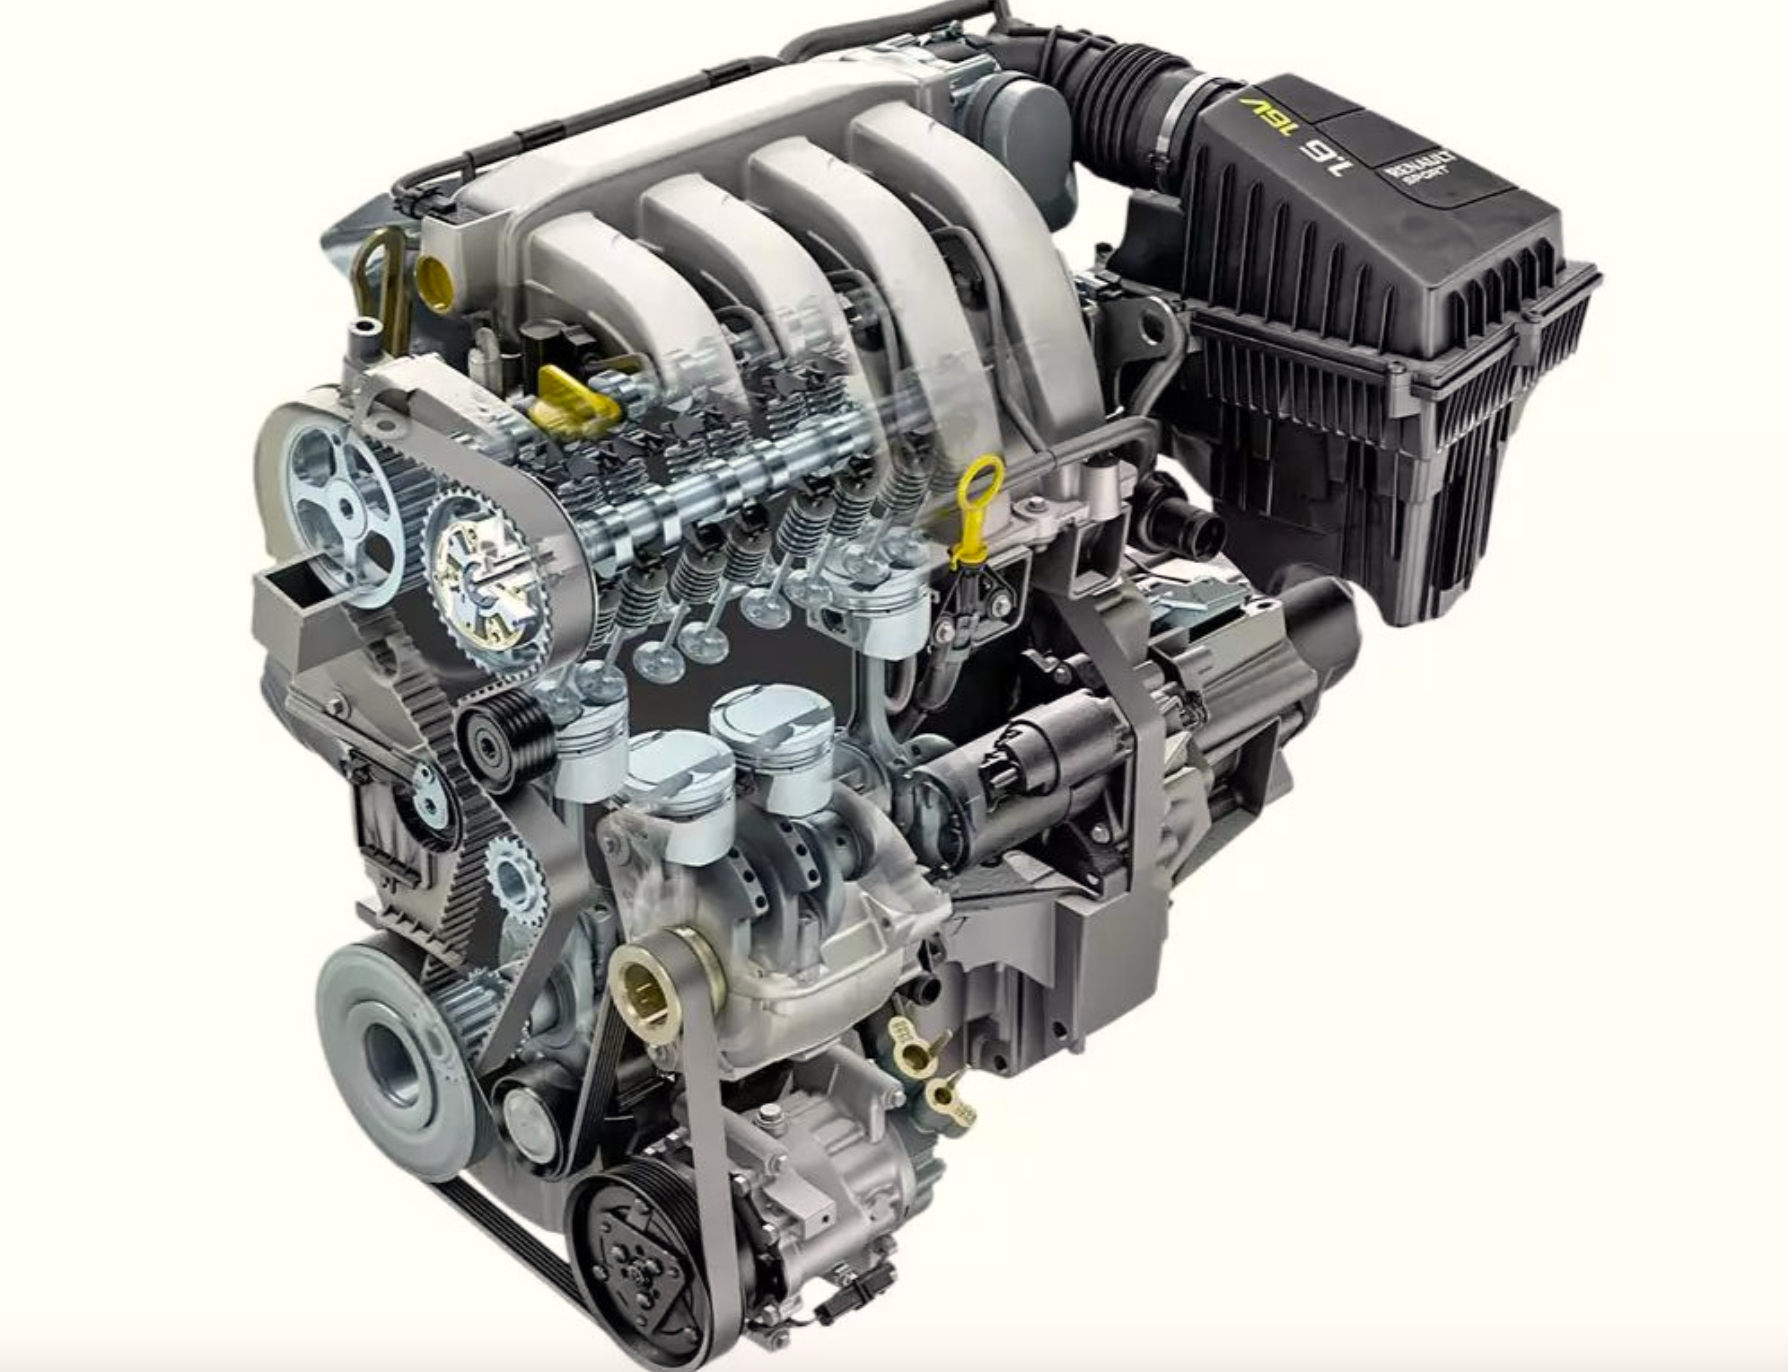 Купить двигатель рено флюенс 1.6. Мотор к4м Рено 16 клапанов. Мотор Рено Логан 1.6 16. Двигатель Renault k4m 1.6 16v. Двигатель Renault 1.6 (k4m.